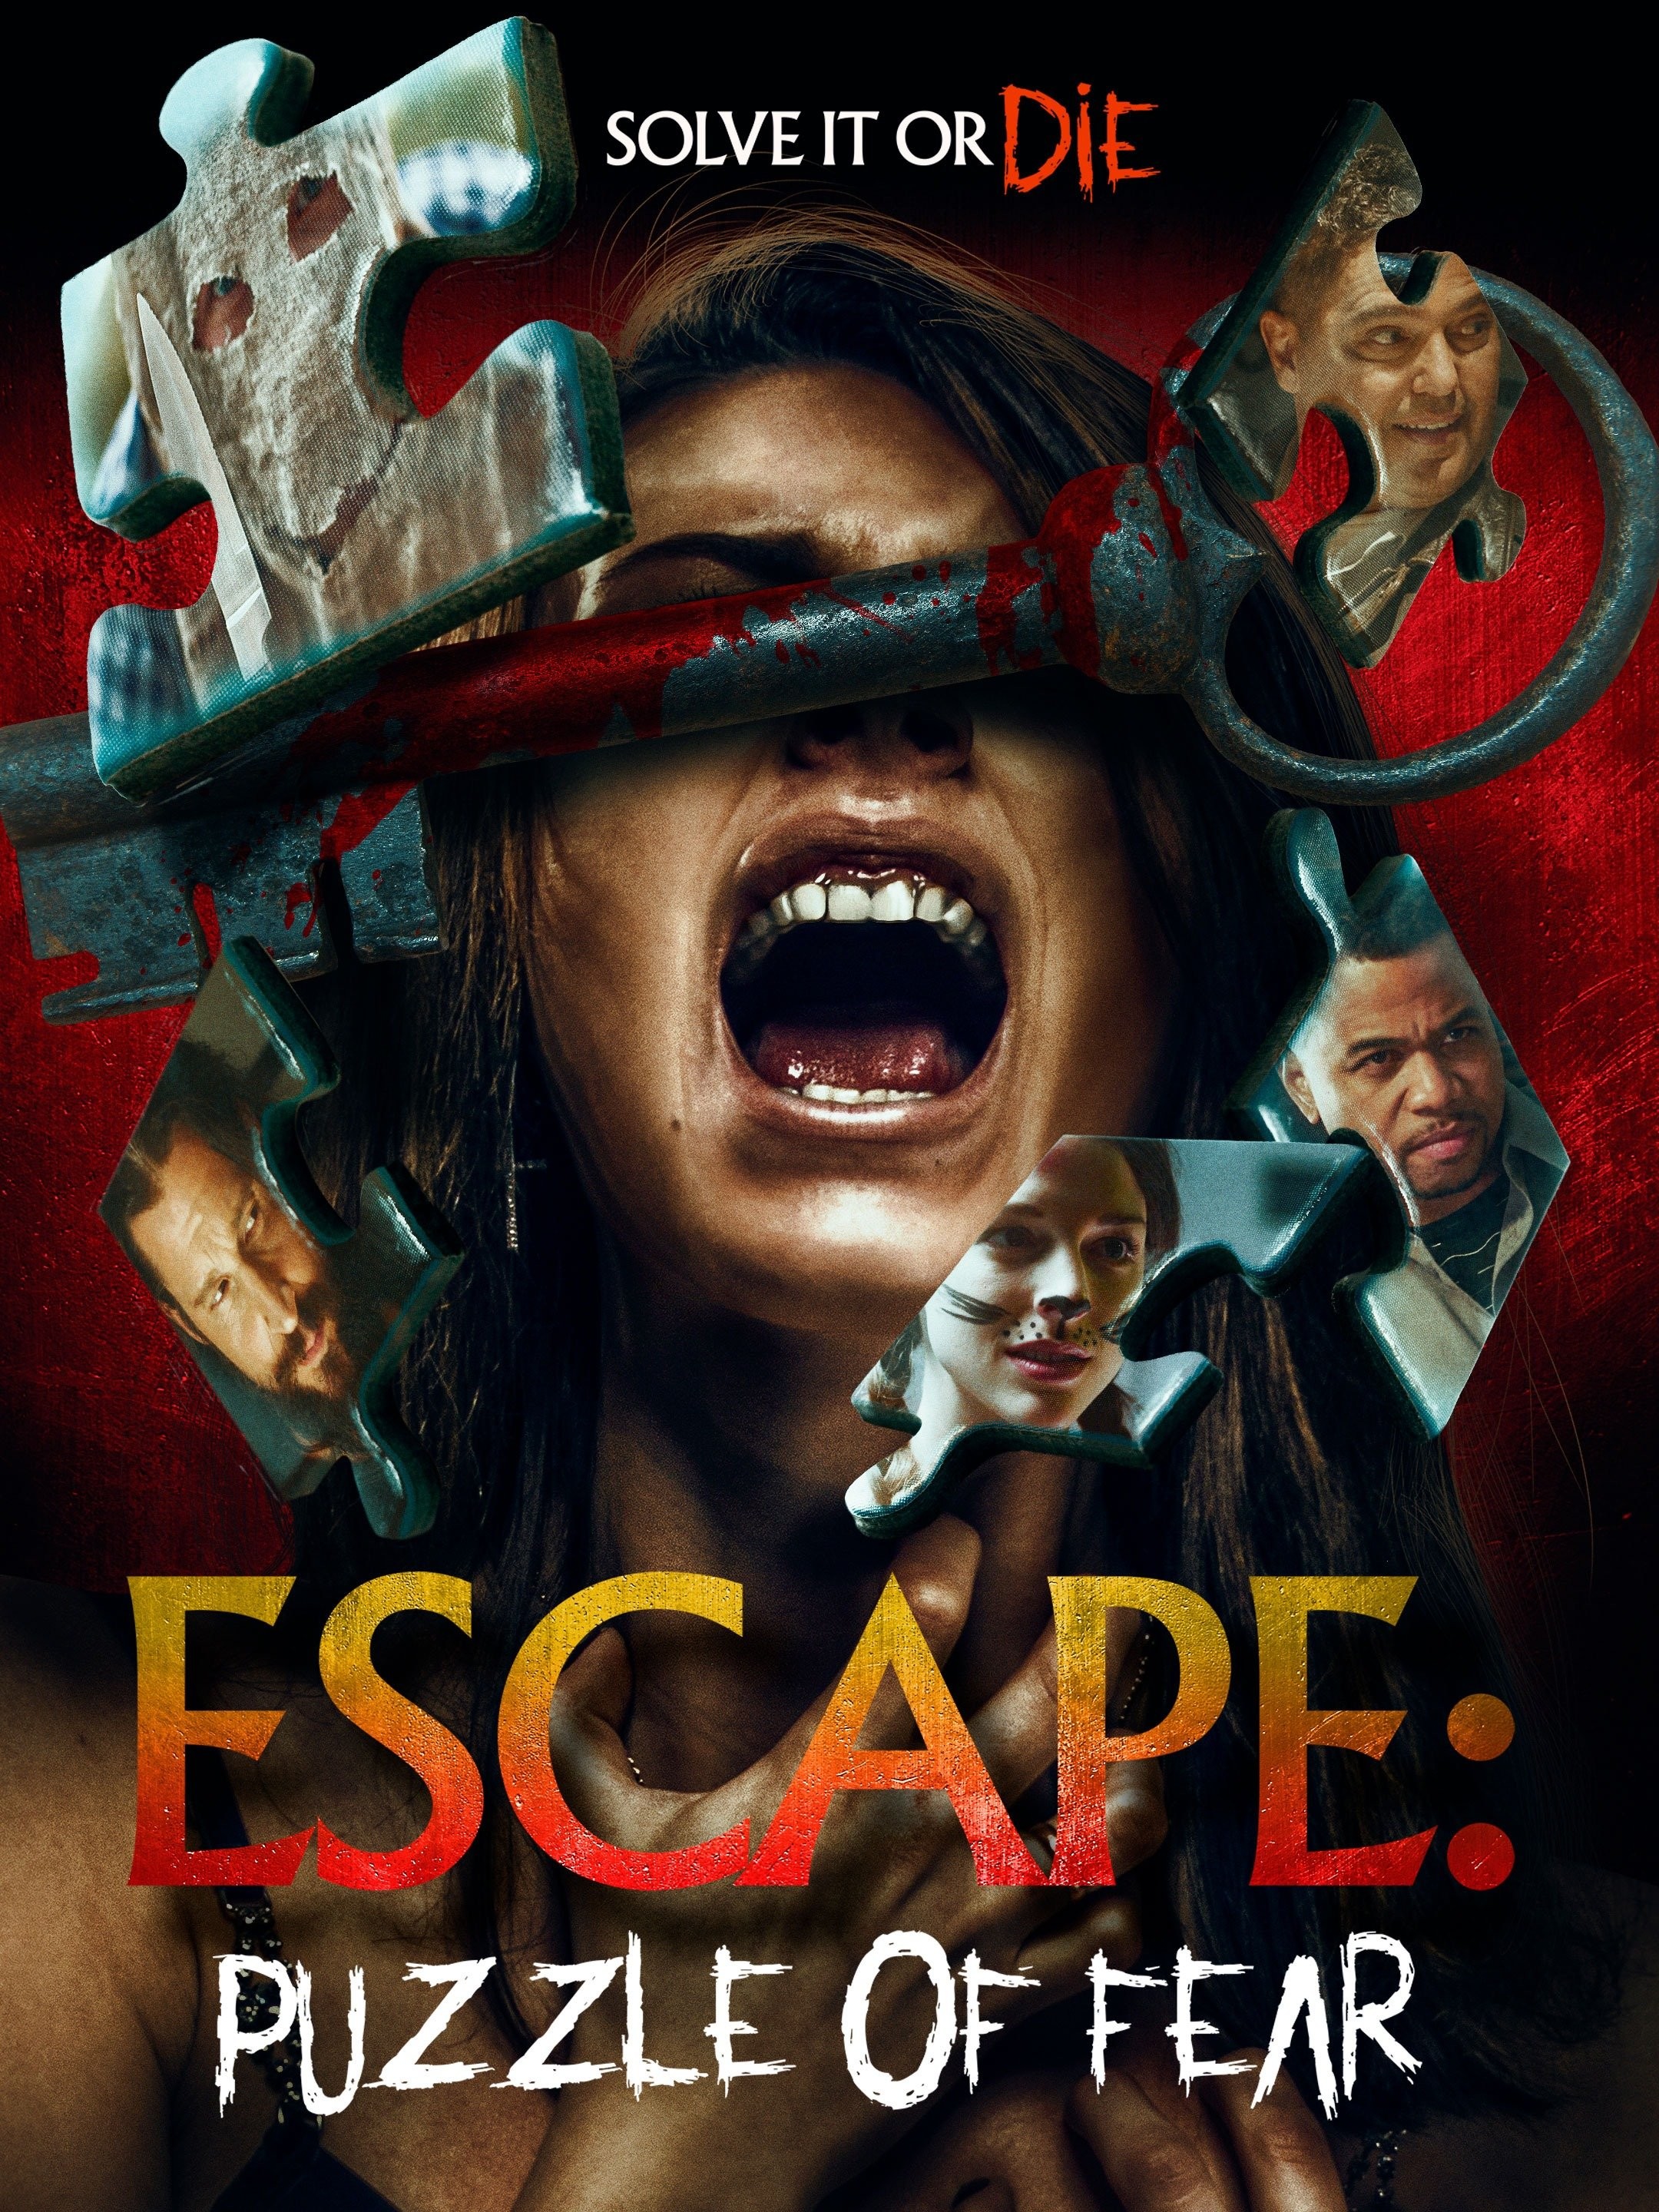 Island Escape - Rotten Tomatoes